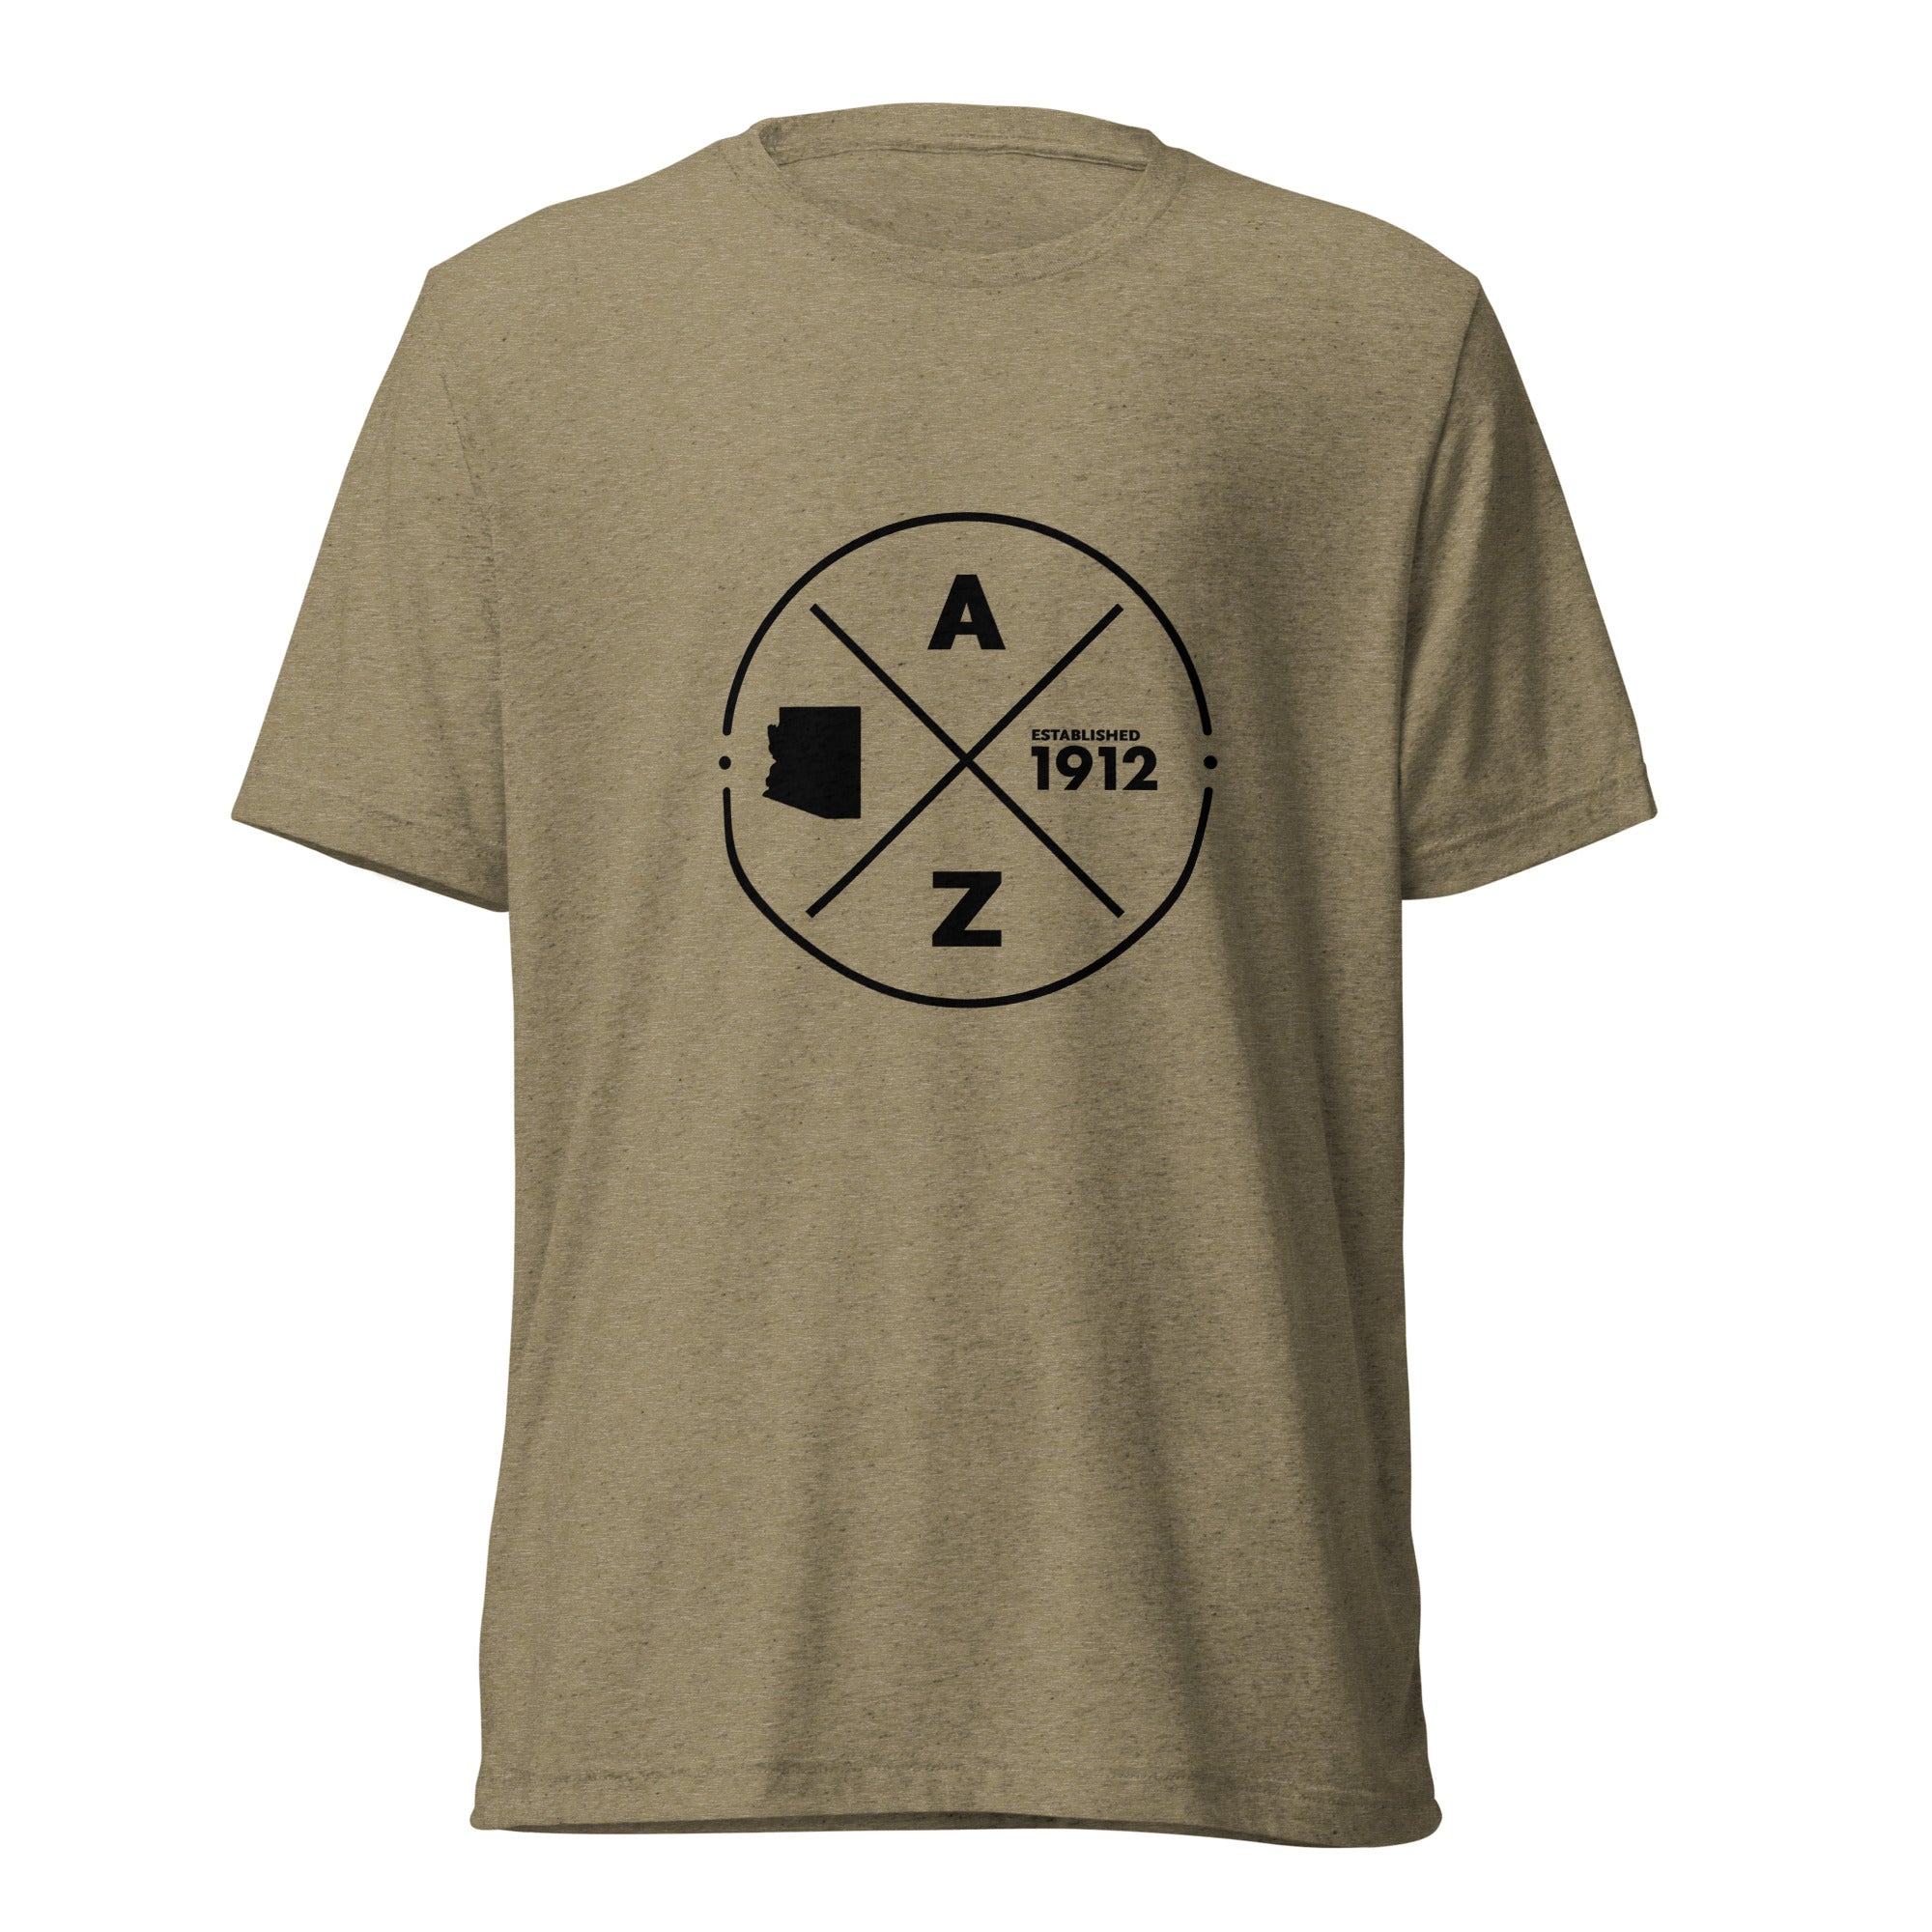 unisex-tri-blend-t-shirt-olive-triblend-front-651208f272d3c.jpg